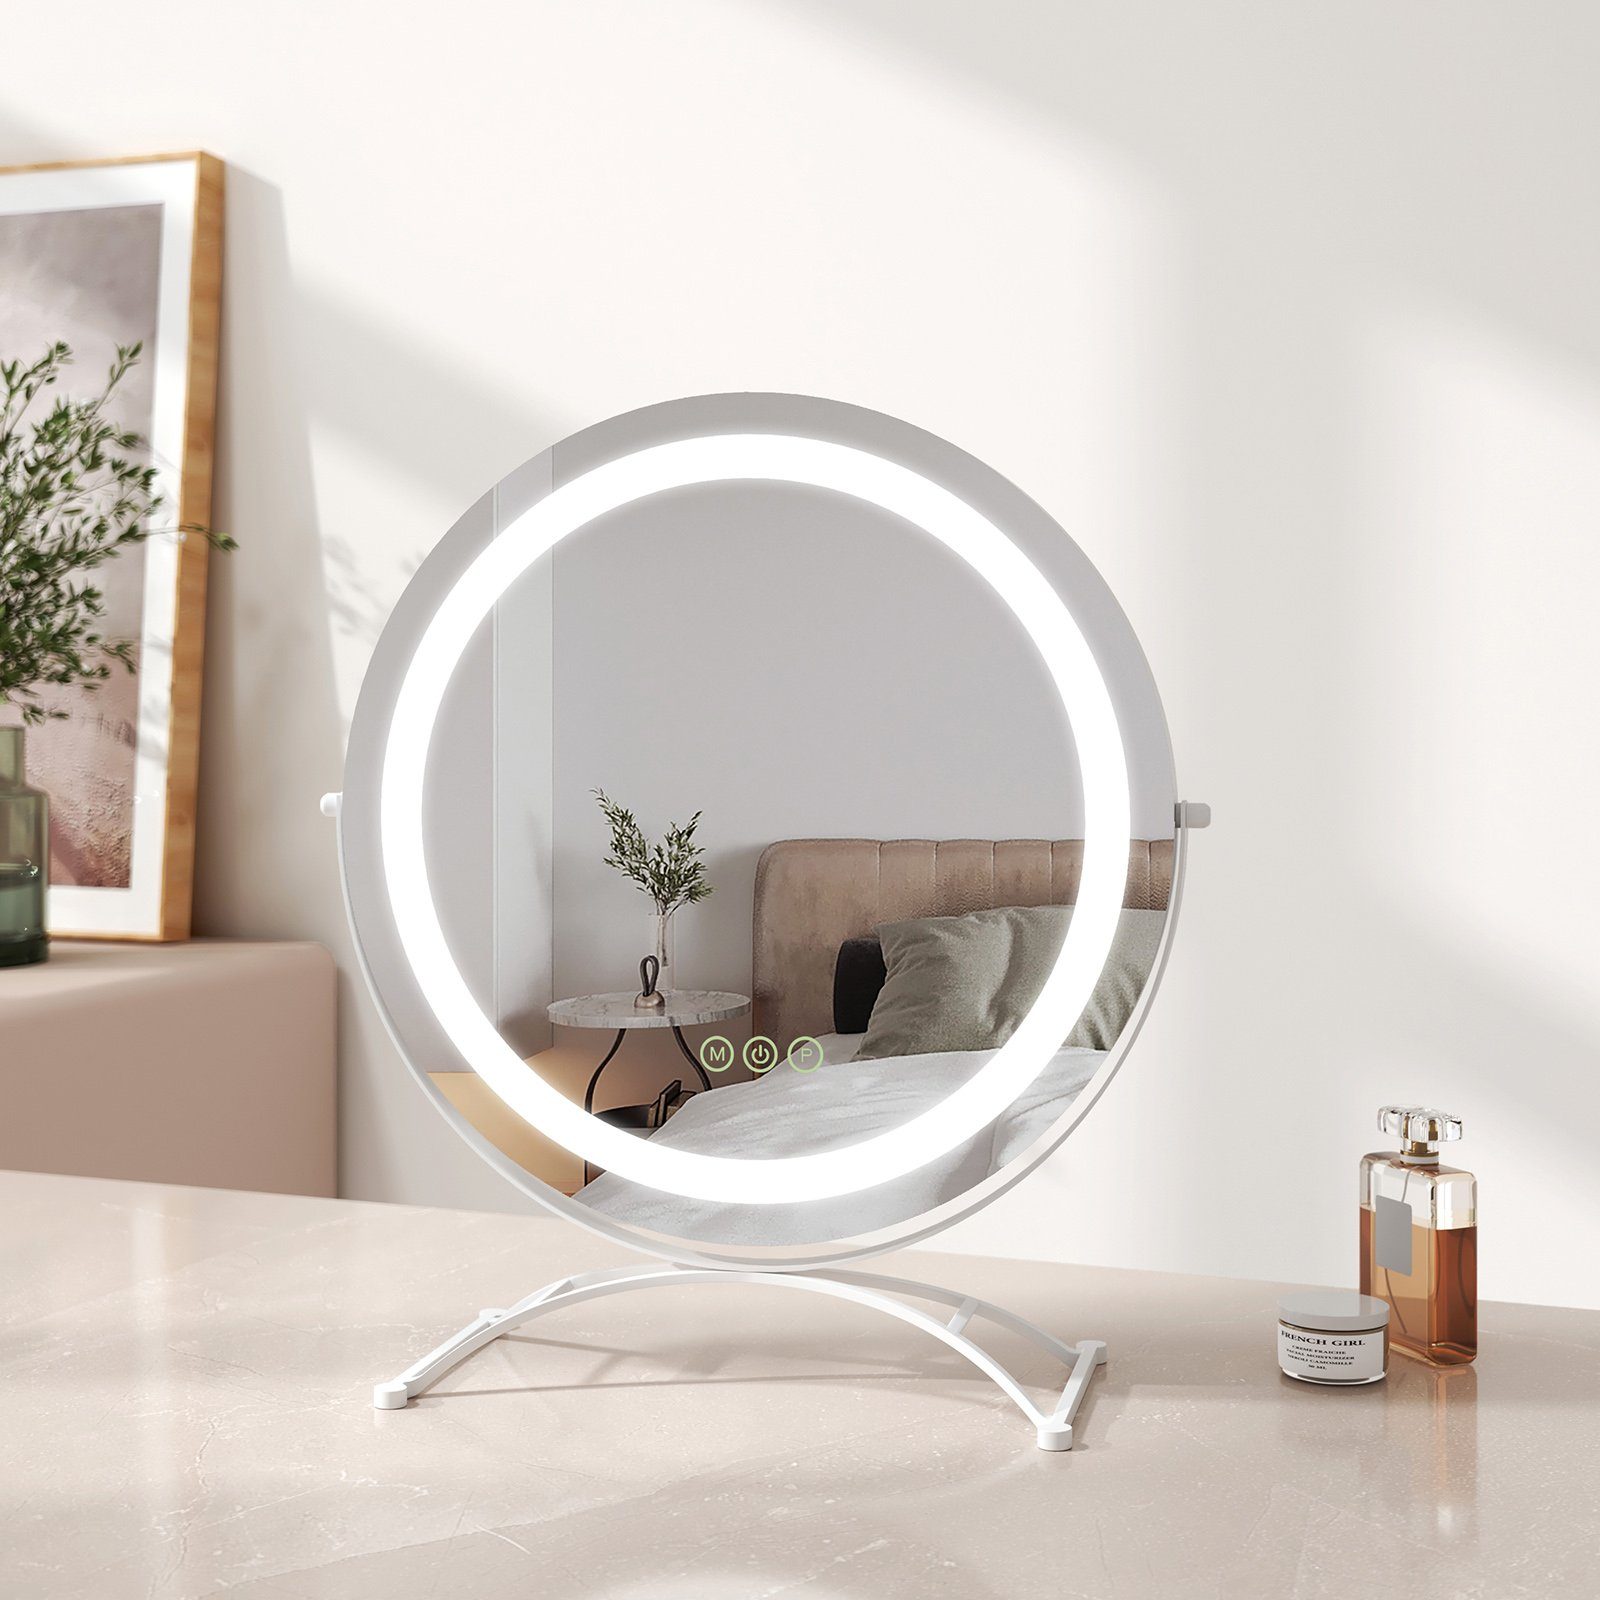 EMKE Schminkspiegel Schminkspiegel LED Runder Kosmetikspiegel Tischspiegel  mit Beleuchtung, mit Touch, 3 Lichtfarben Dimmbar, Memory-Funktion, 360°  Drehbar